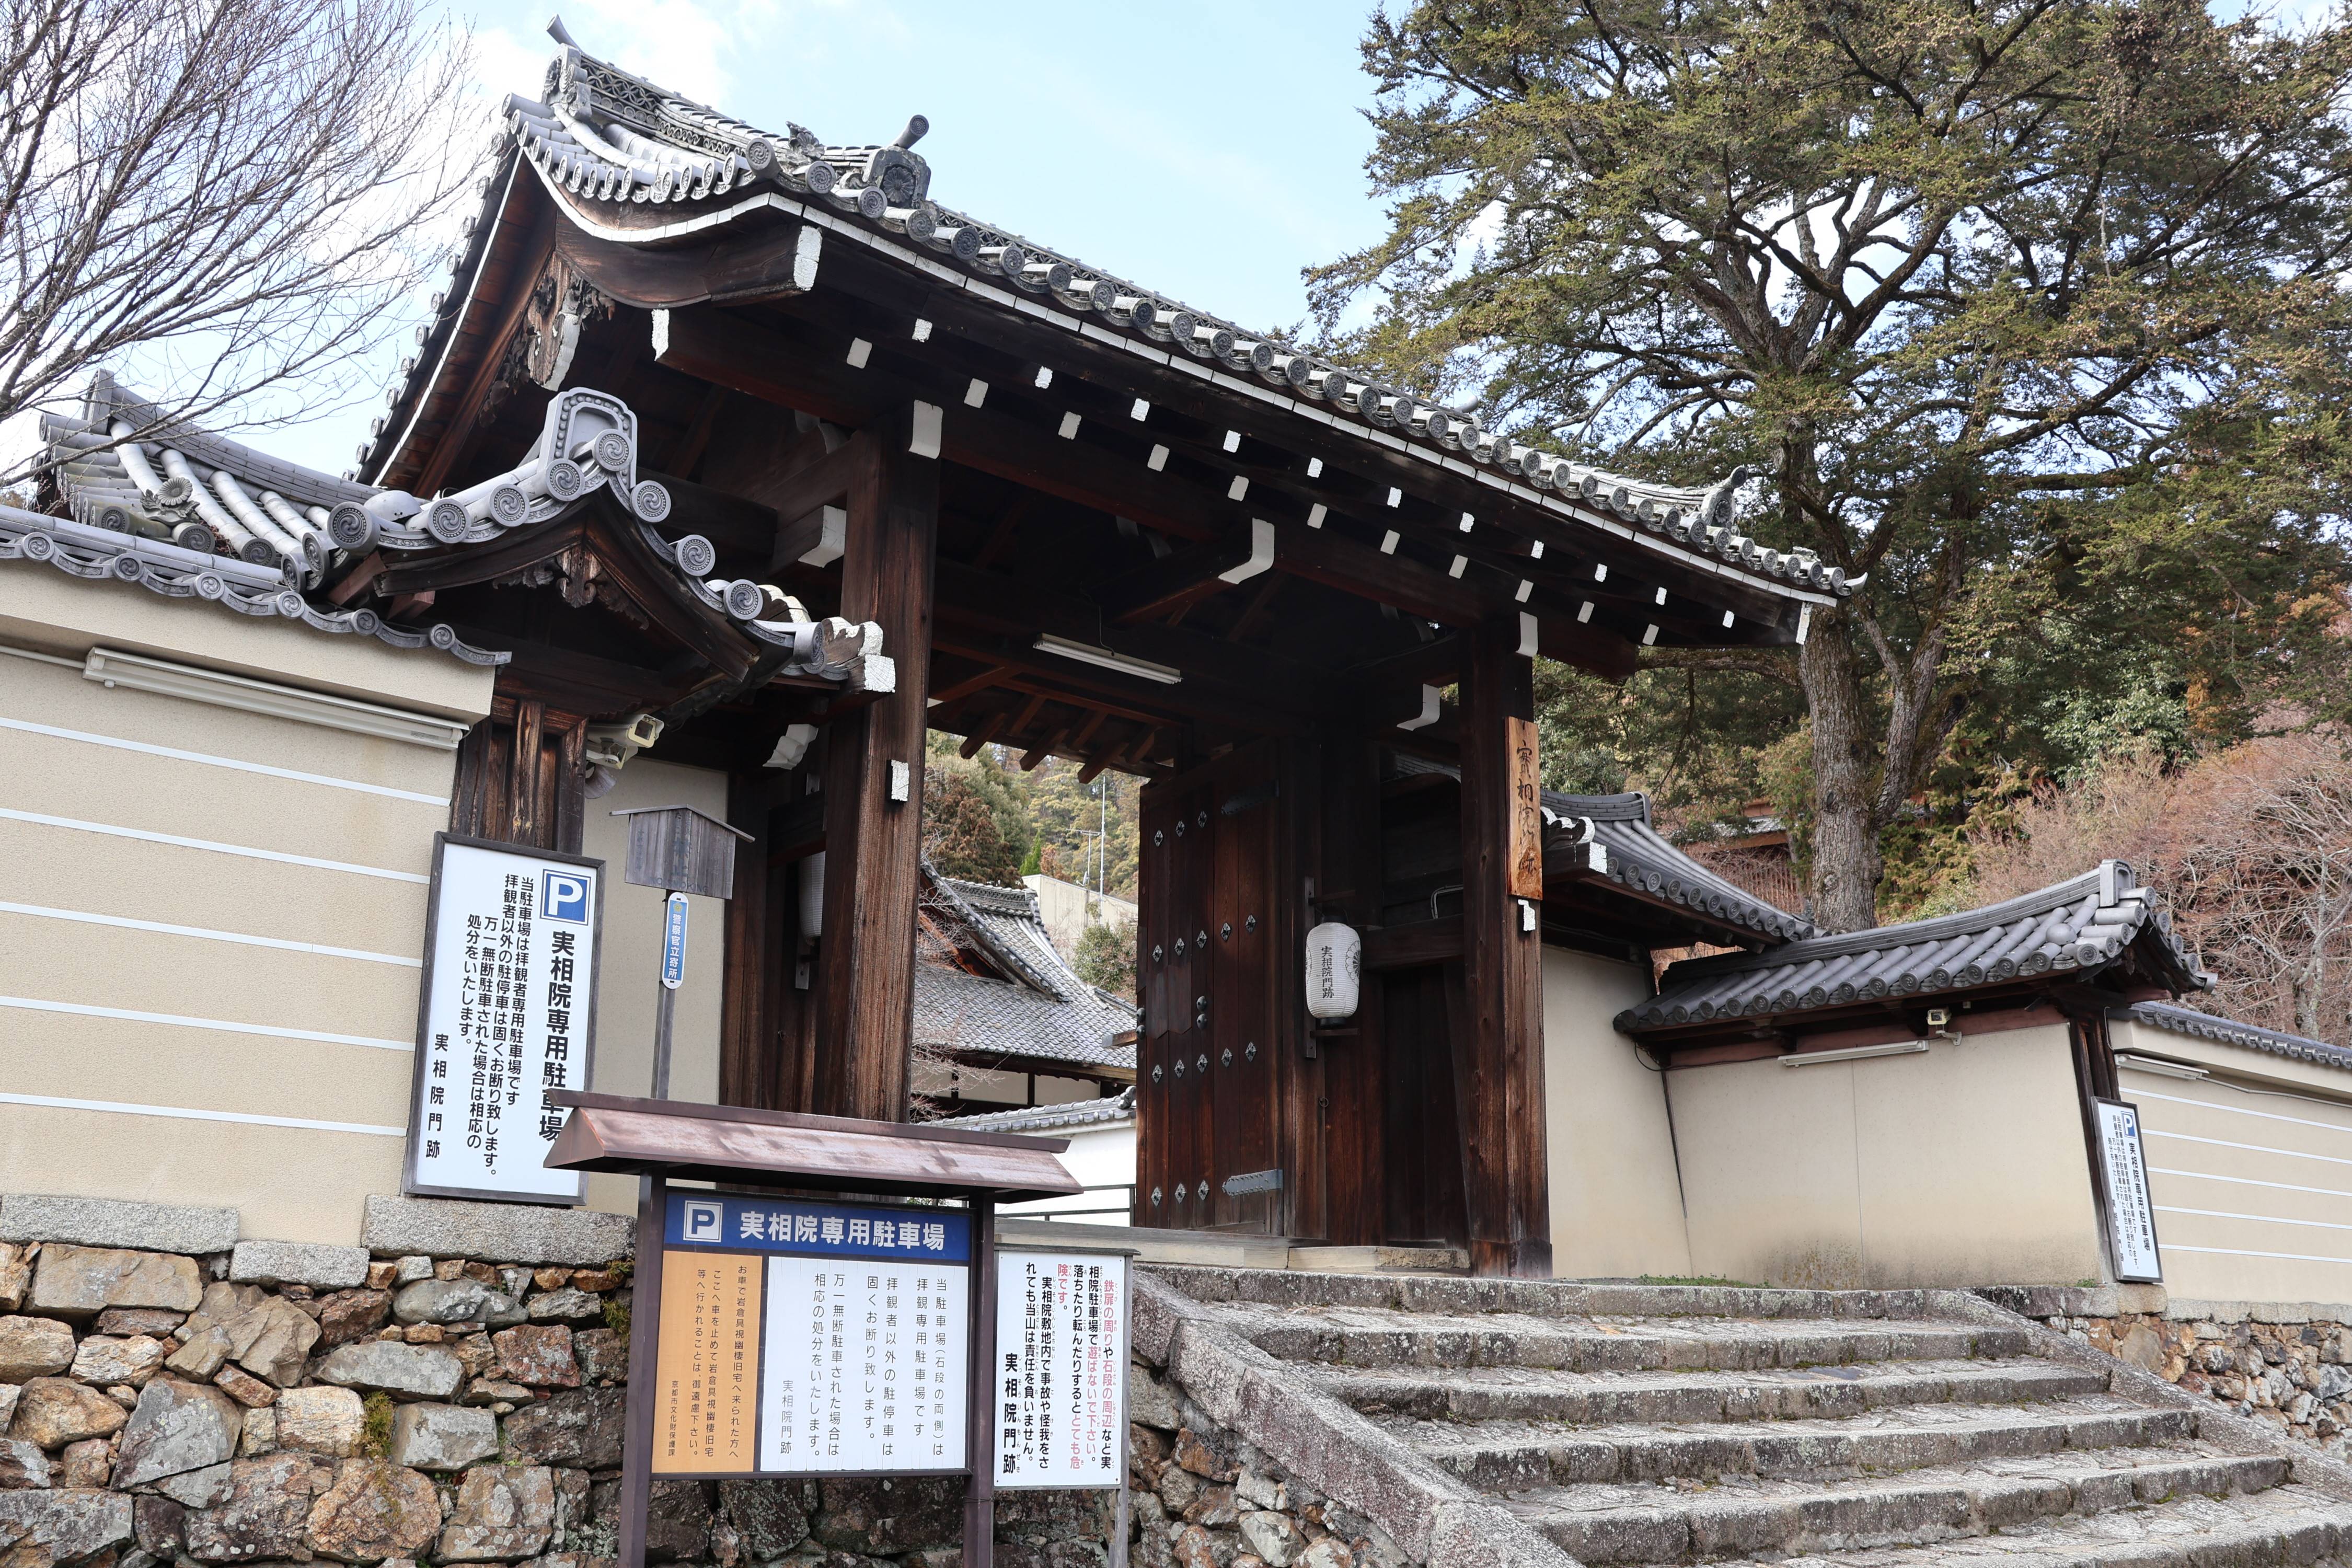 京都の門跡寺院の土地が「中国で売却」？ 悪質デマの拡散と困惑 - 産経